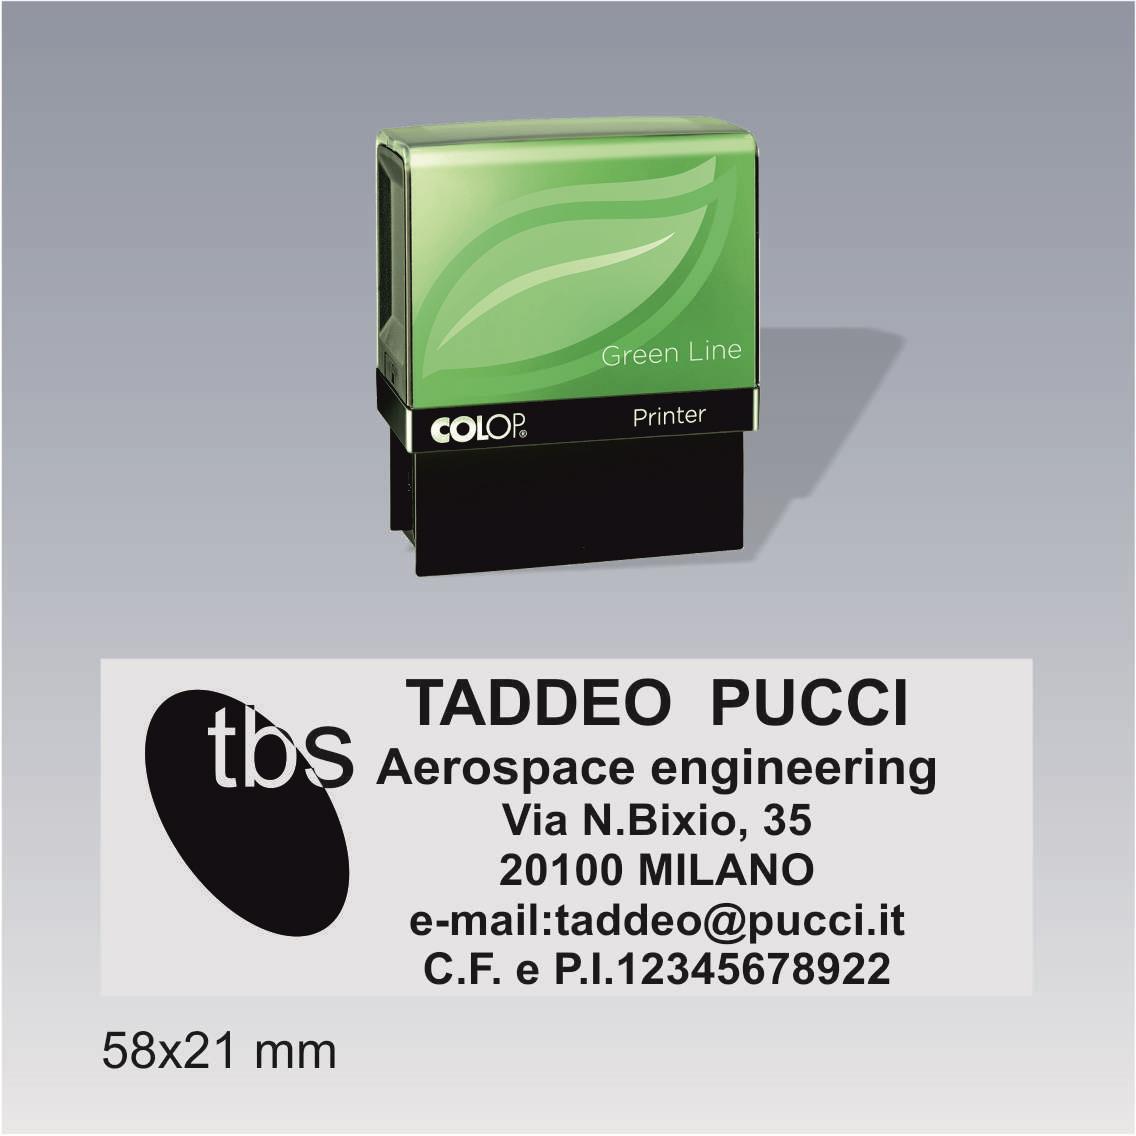 Timbro Autoinchiostrante Colop printer 40 g7 green line